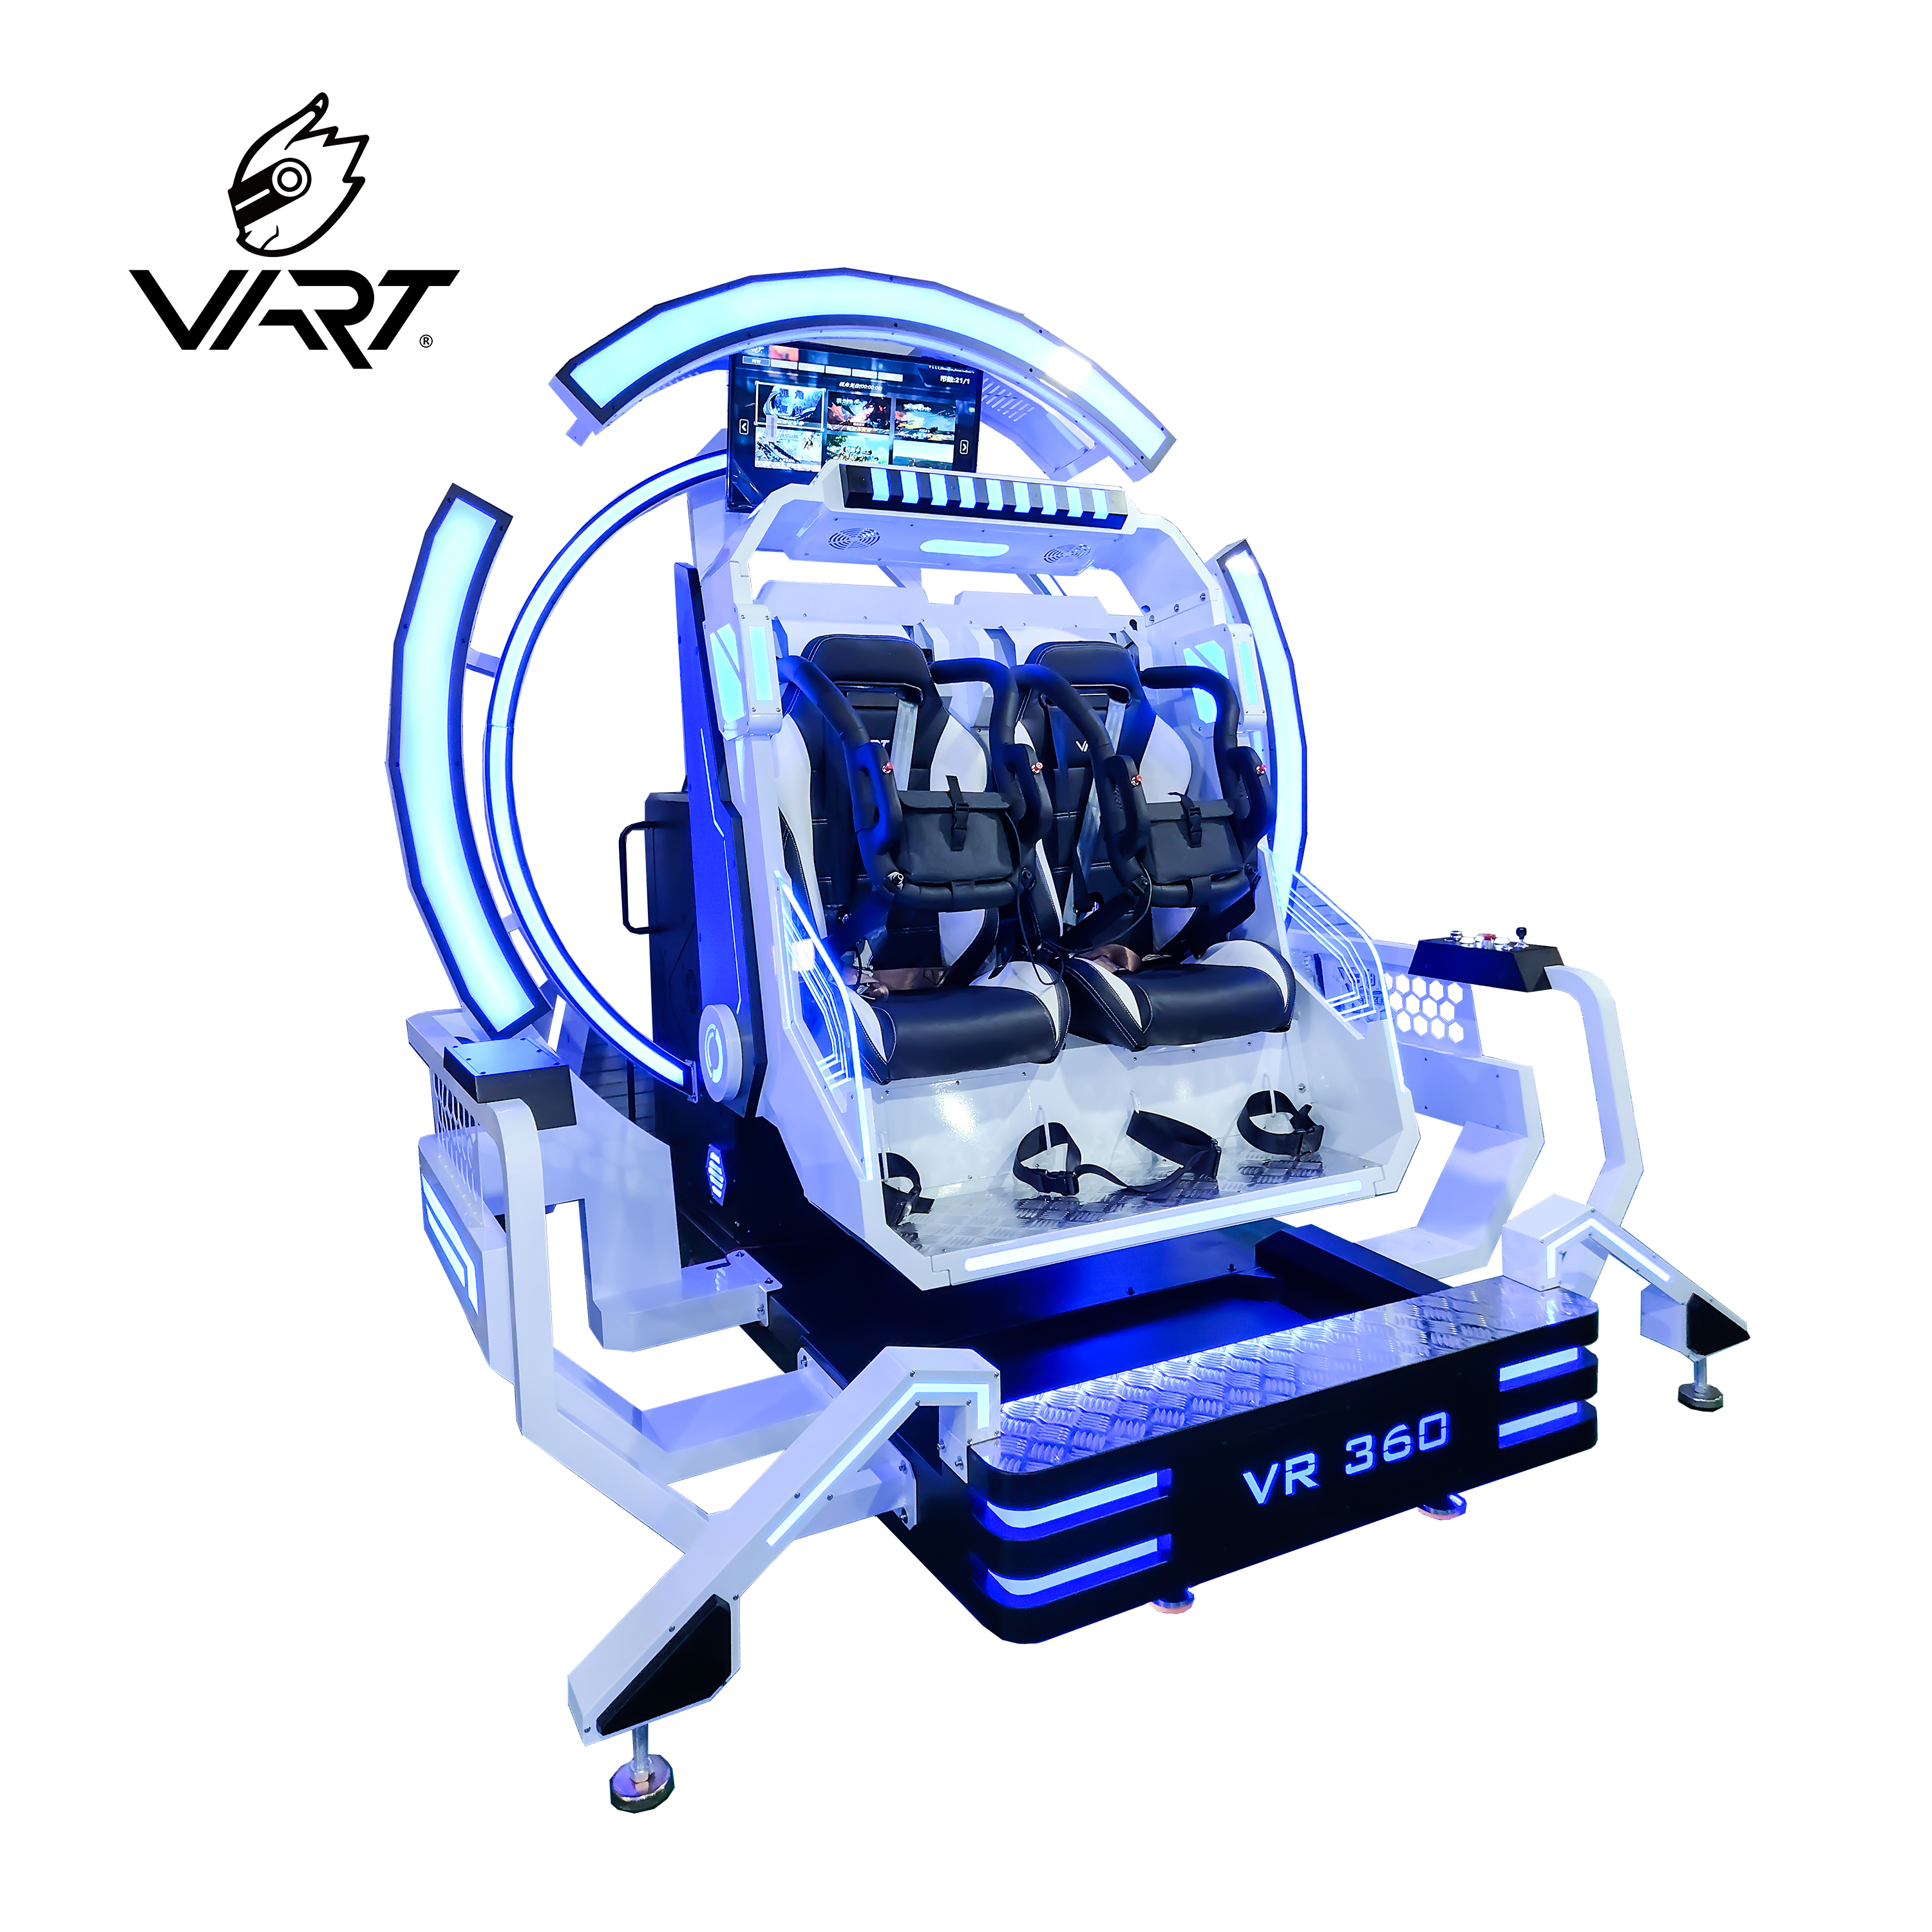 Cadira VART VR 360 de 2 places